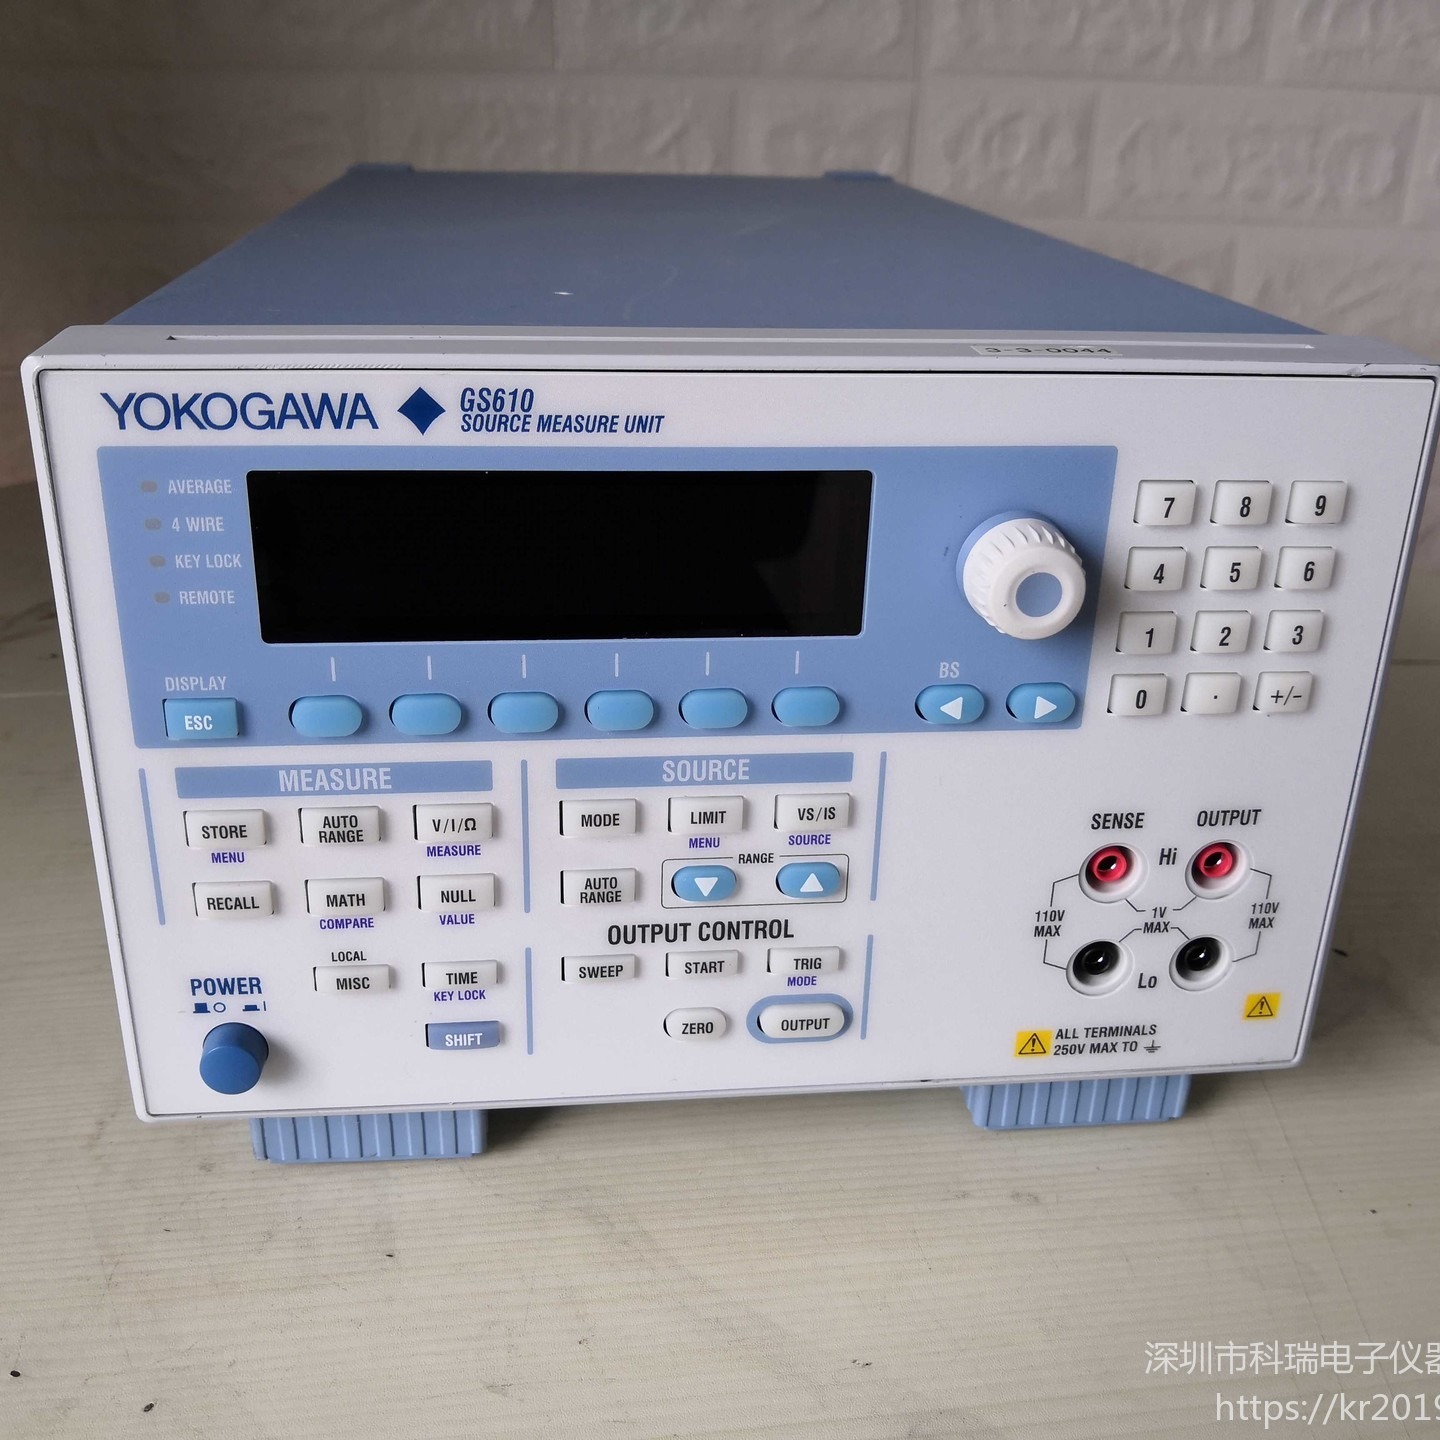 出售/回收 横河Yokogawa GS610 信号源测量单元 降价出售